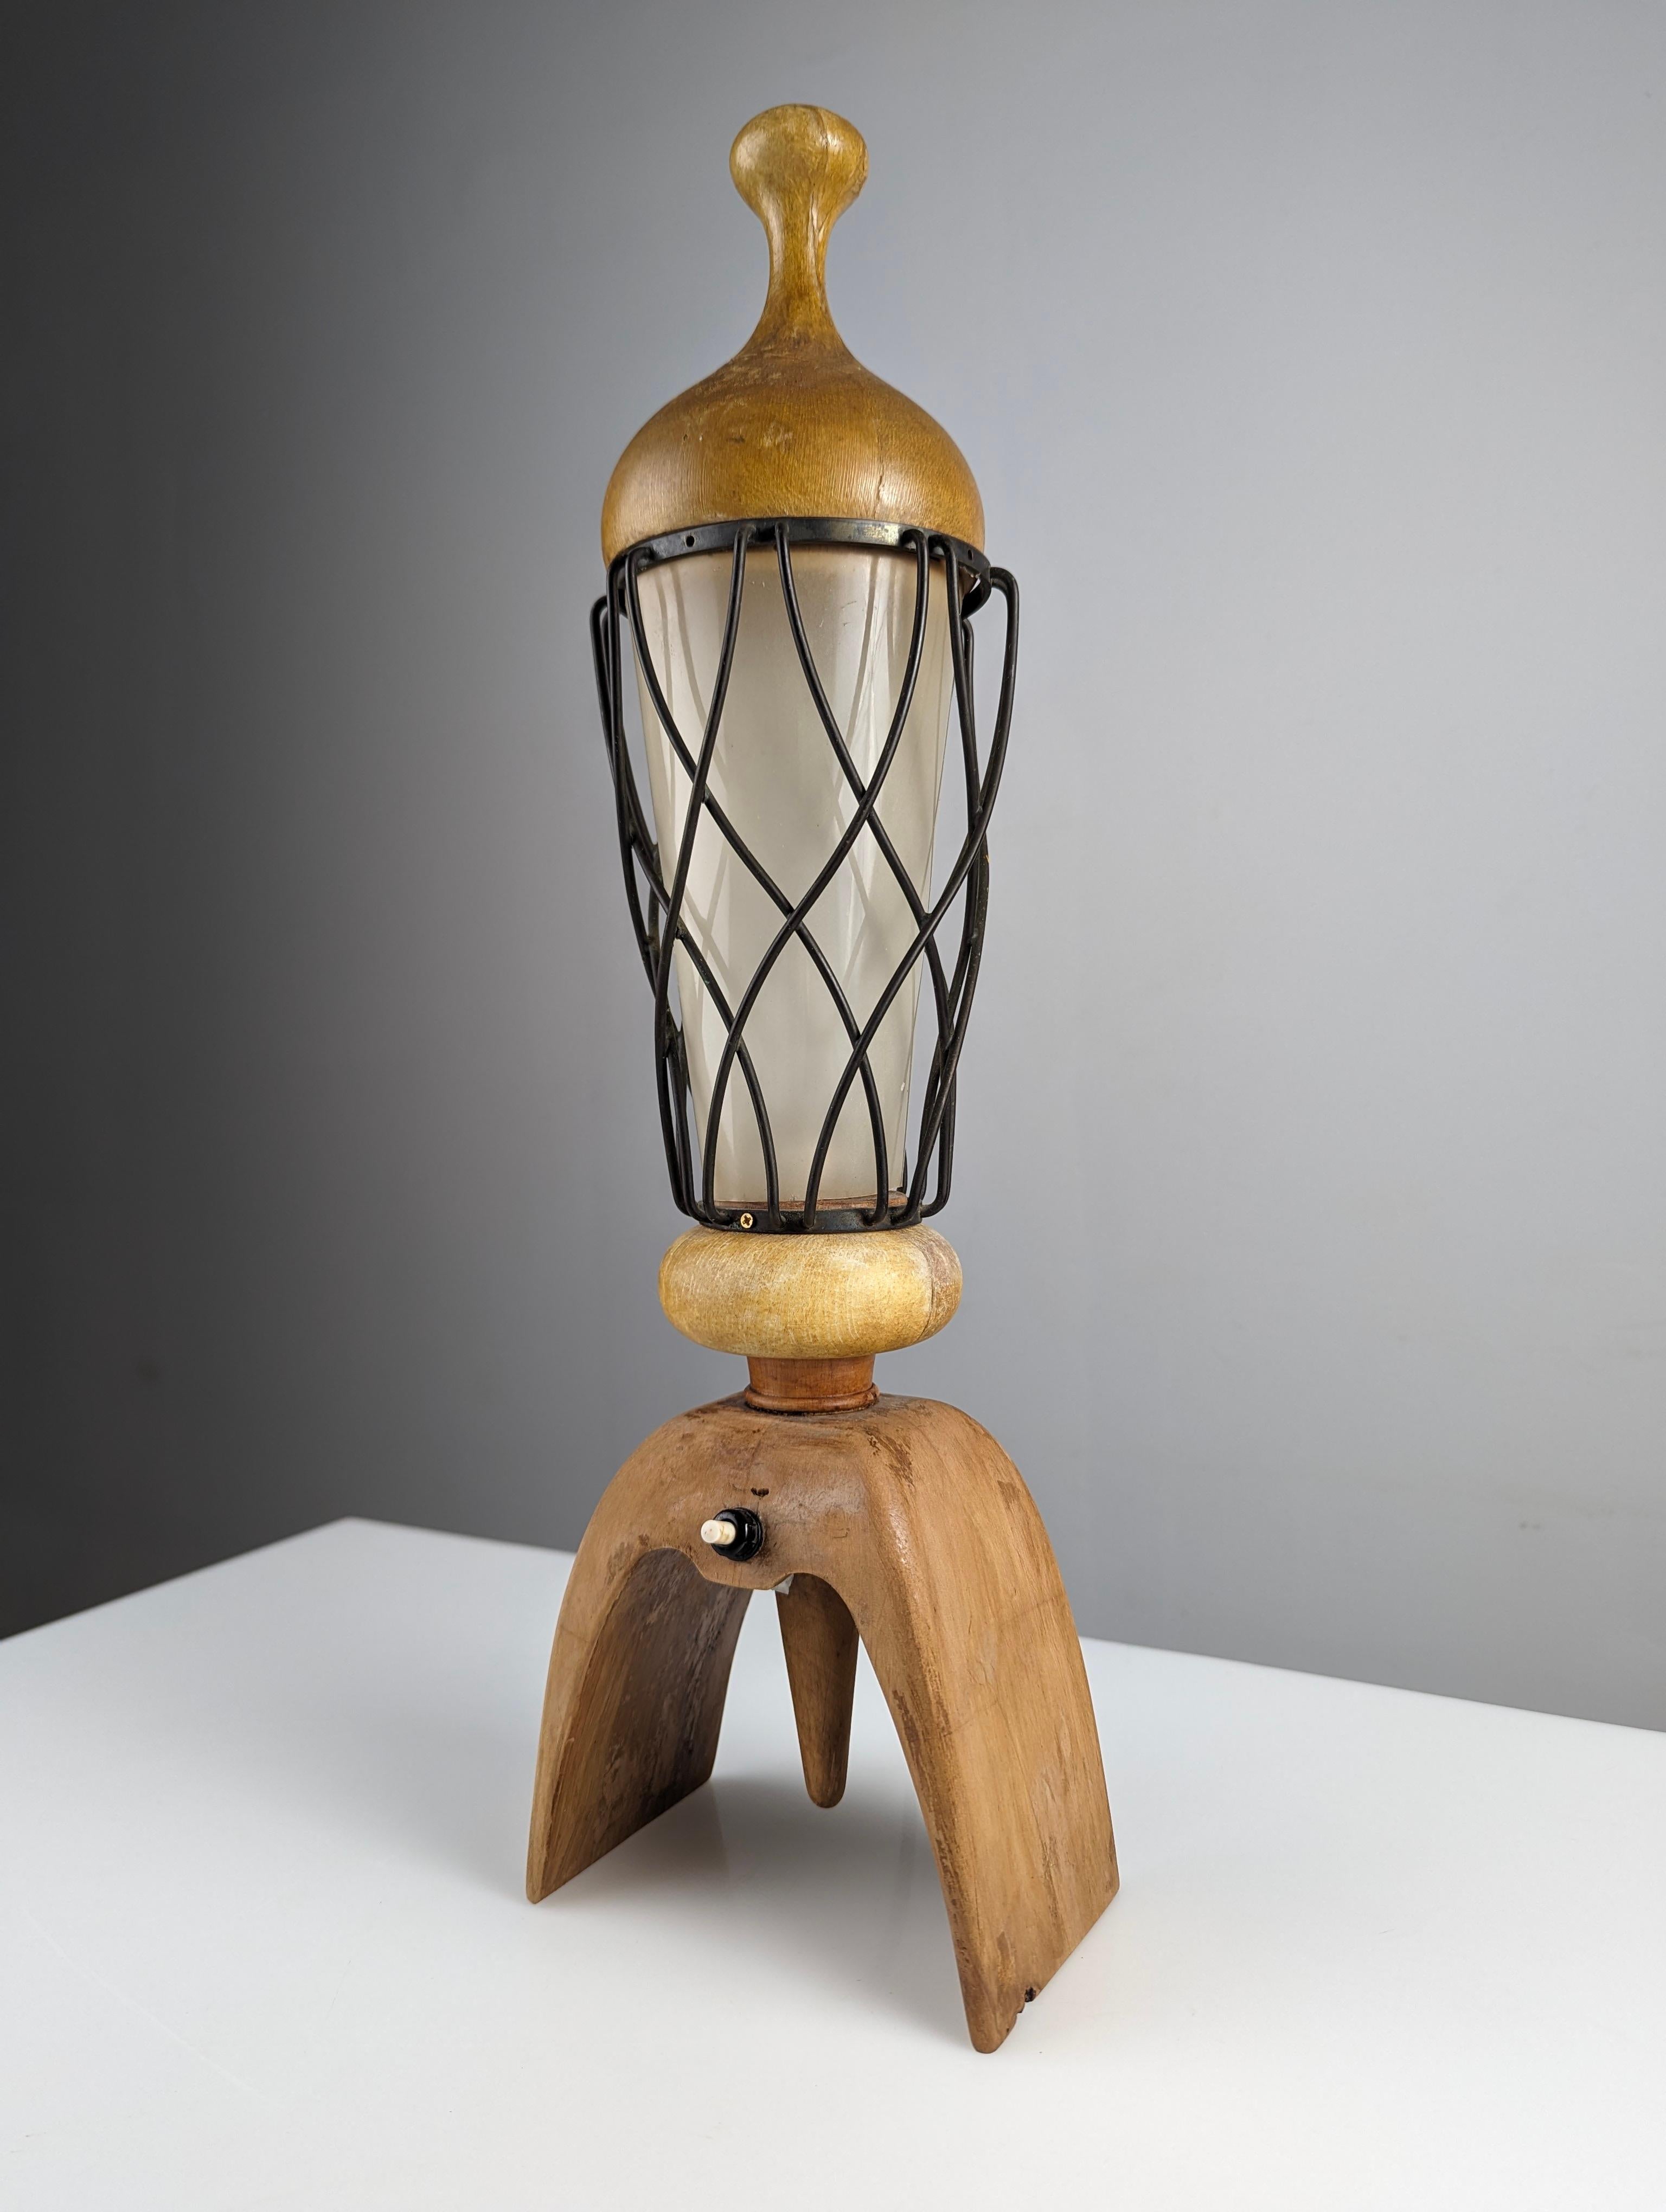 Lampe de table du grand designer italien Aldo Tura. Cette pièce allie le bois aux lignes courbes avec sa lanterne métallique croisée caractéristique protégeant le cylindre en acrylique. Une belle œuvre du design italien particulier d'Aldo Tura dans